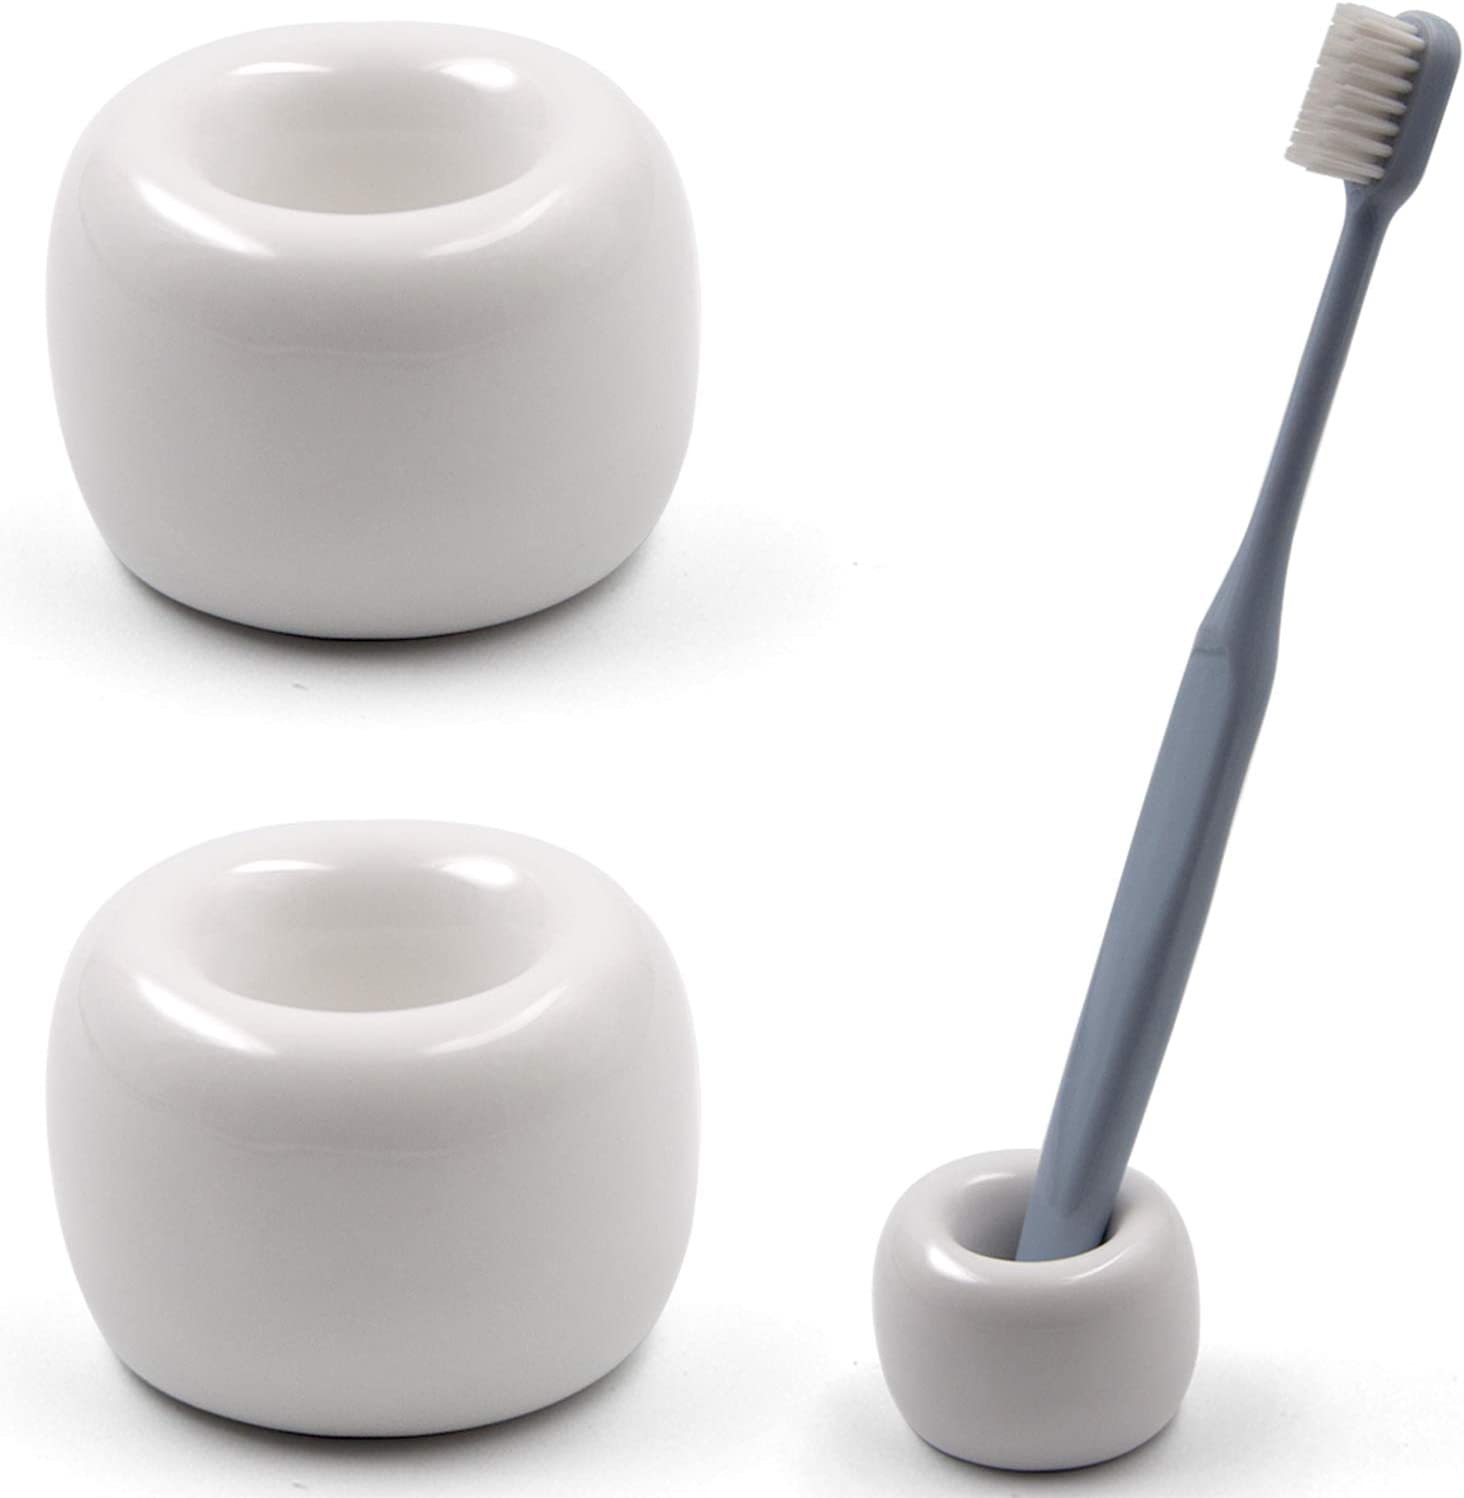 Airmoon Freestanding Hygenic Toothbrush Holder, 2-Pack